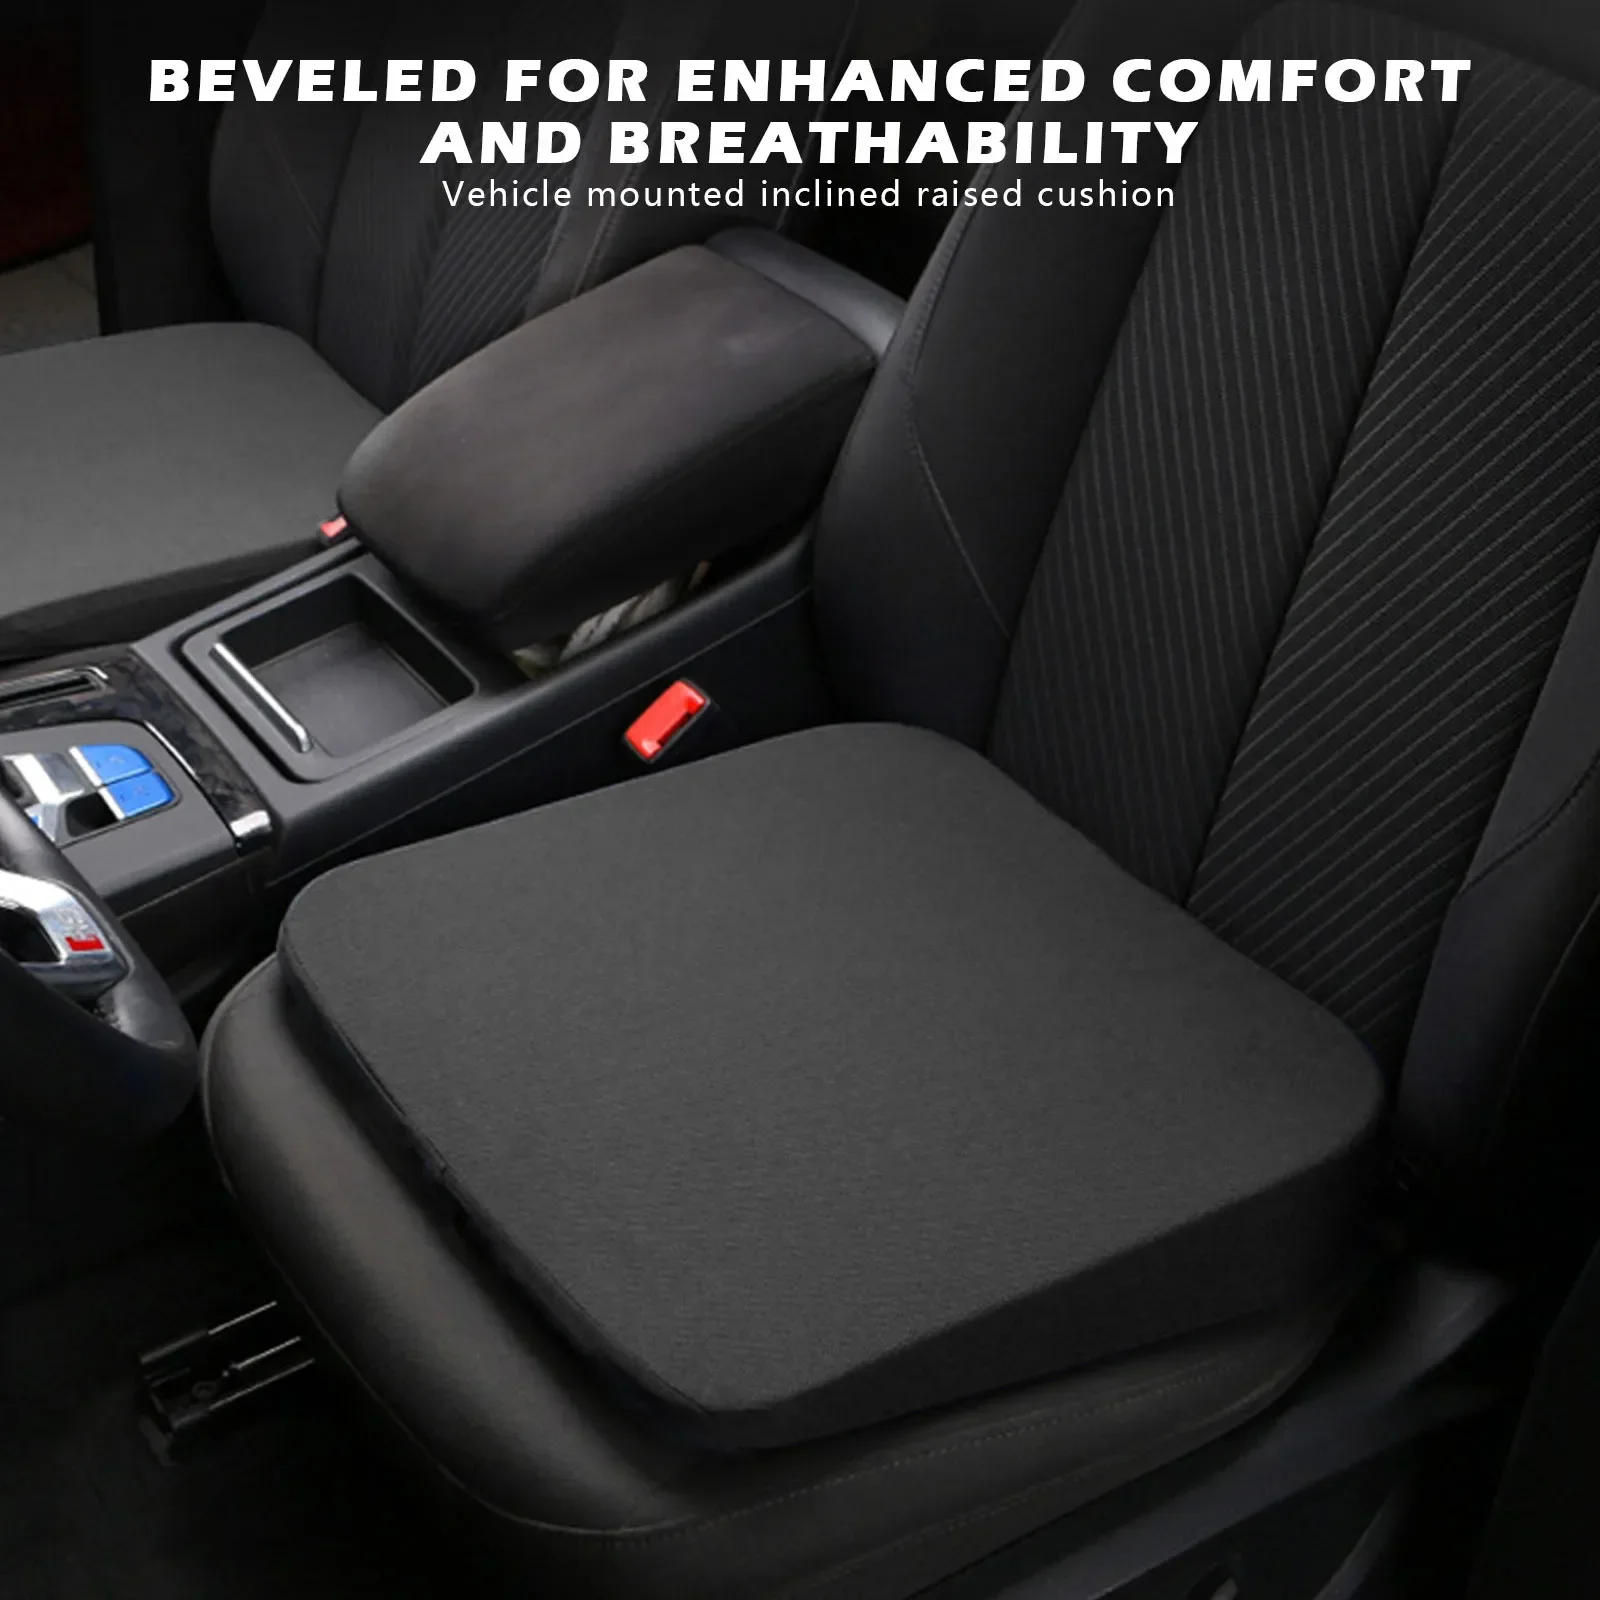 https://ae01.alicdn.com/kf/S70d21a1f2d4a40058b5122258afc2097s/Car-Seat-Heightening-Cushion-Bevel-Main-Driver-Single-Seat-Thickening-Butt-Cushion-Heightening-Mats-Auto-Interior.jpg